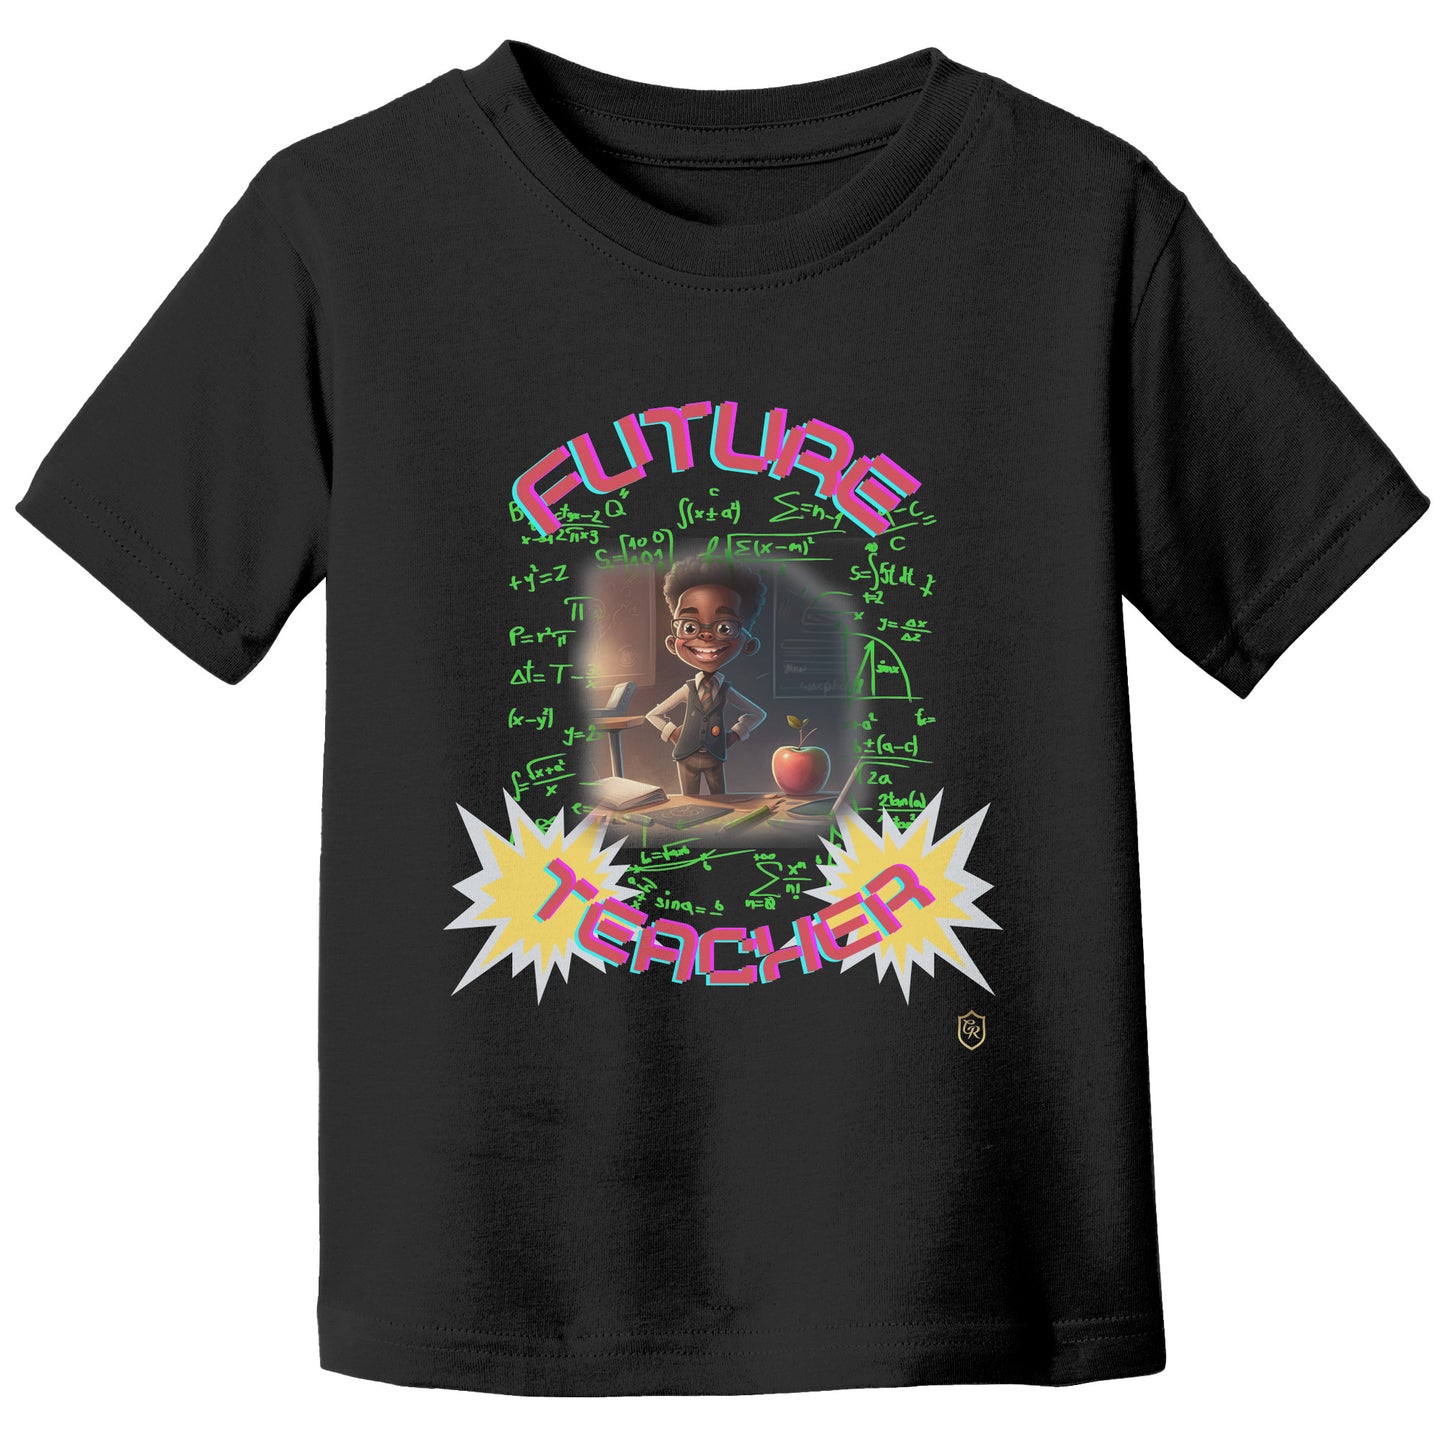 Boy's Future Teacher T-shirt